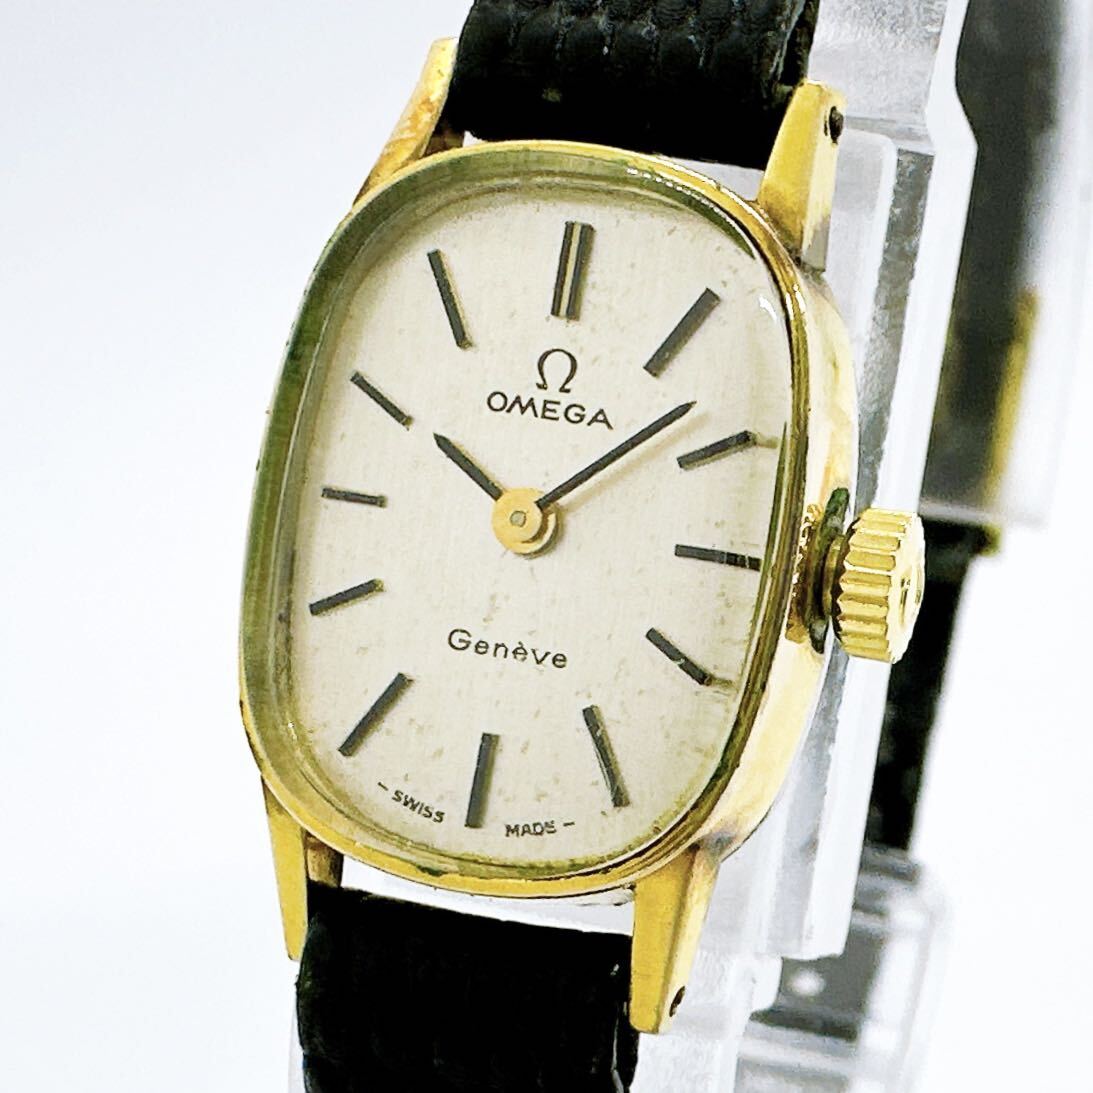 03157 オメガ OMEGA ジュネーブ Geneve レディース 腕時計 手巻き ゴールドカラー アンティーク ヴィンテージ